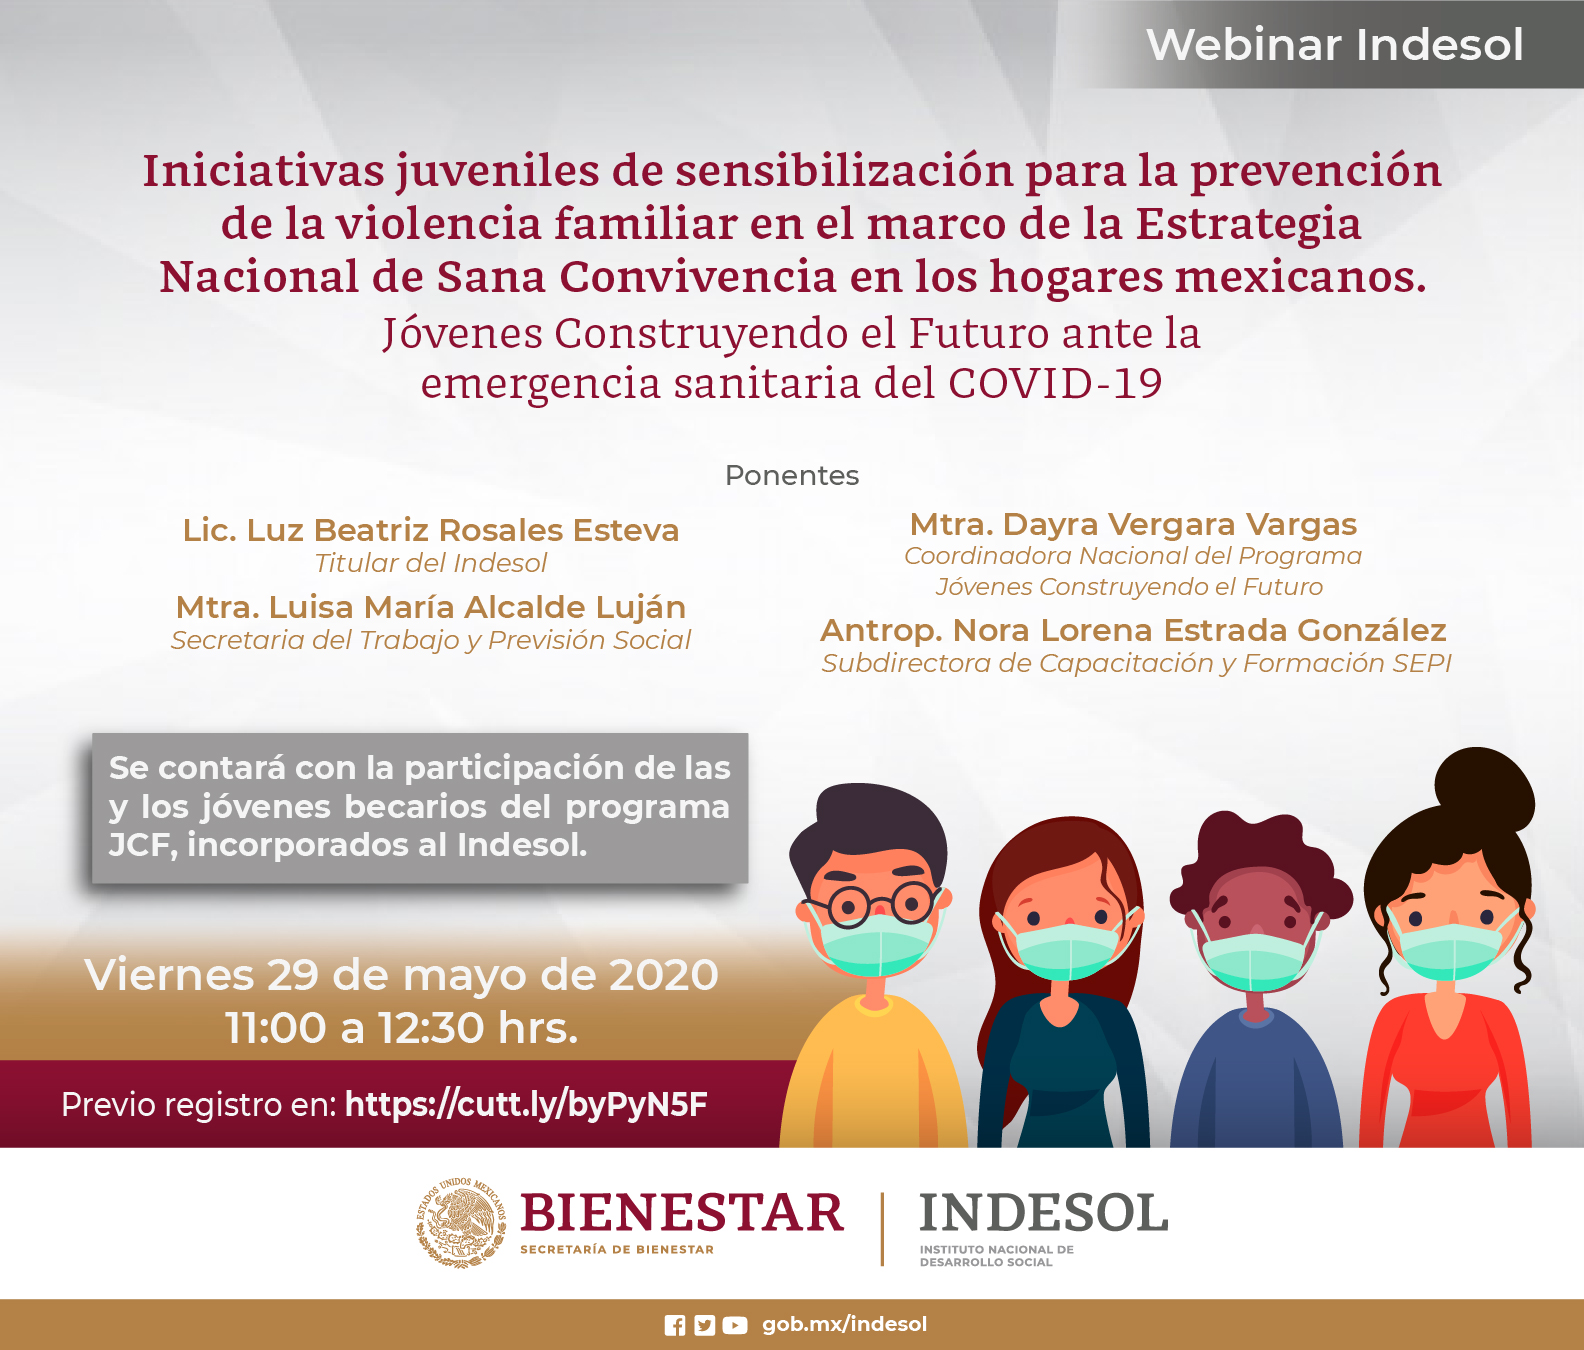 Webinar Indesol Iniciativas juveniles de sensibilización para la prevención de la violencia familiar en el marco de la Estrategia Nacional de Sana Convivencia en los hogares mexicanos.  Viernes 29 de mayo, 11 hrs.